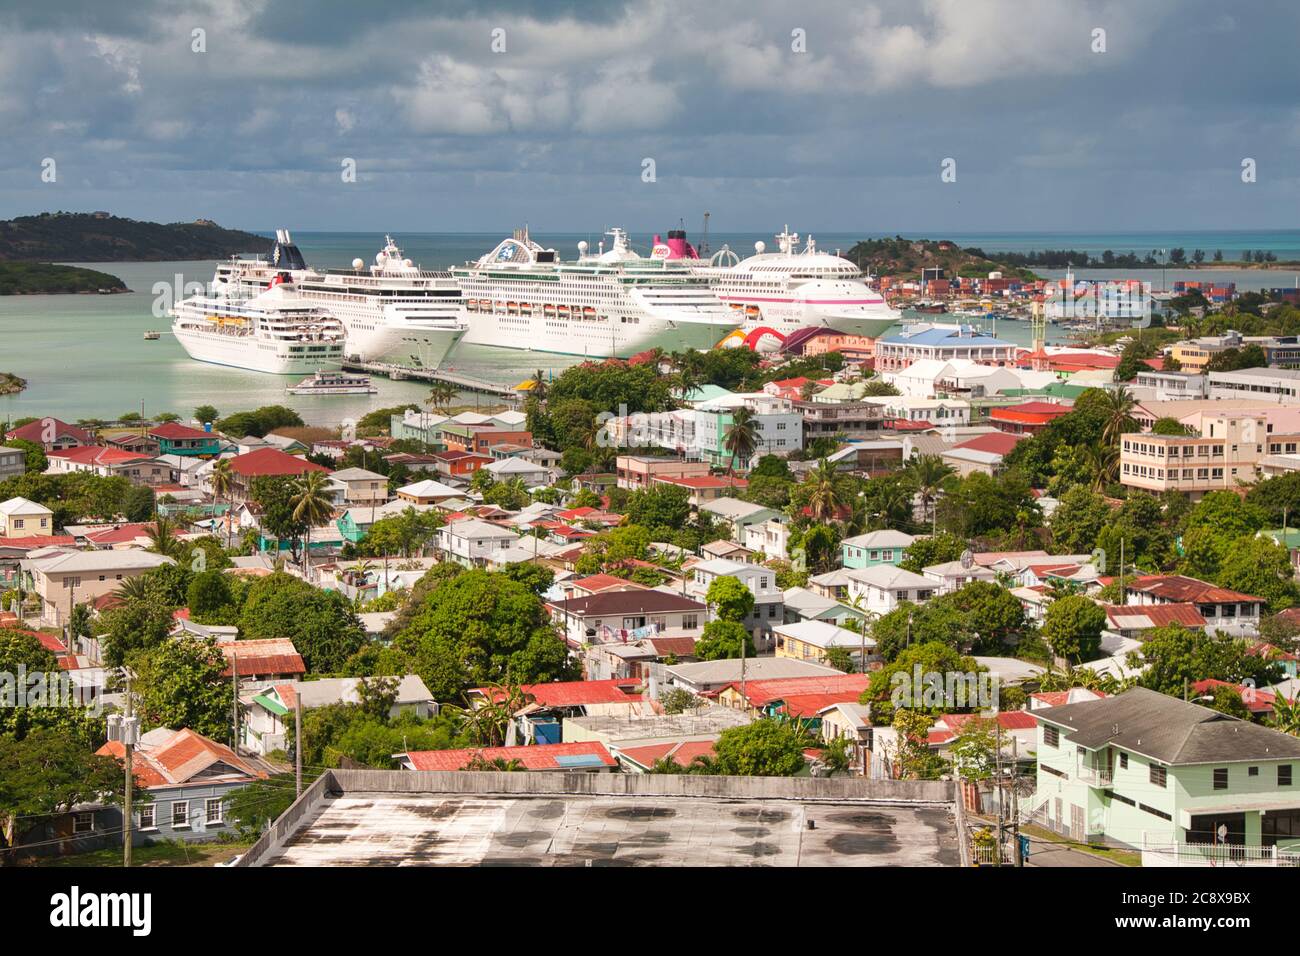 Le navi da crociera si allineano nel porto, sembrando nudere gli edifici di St Johns, isola di Antigua nei Caraibi Foto Stock